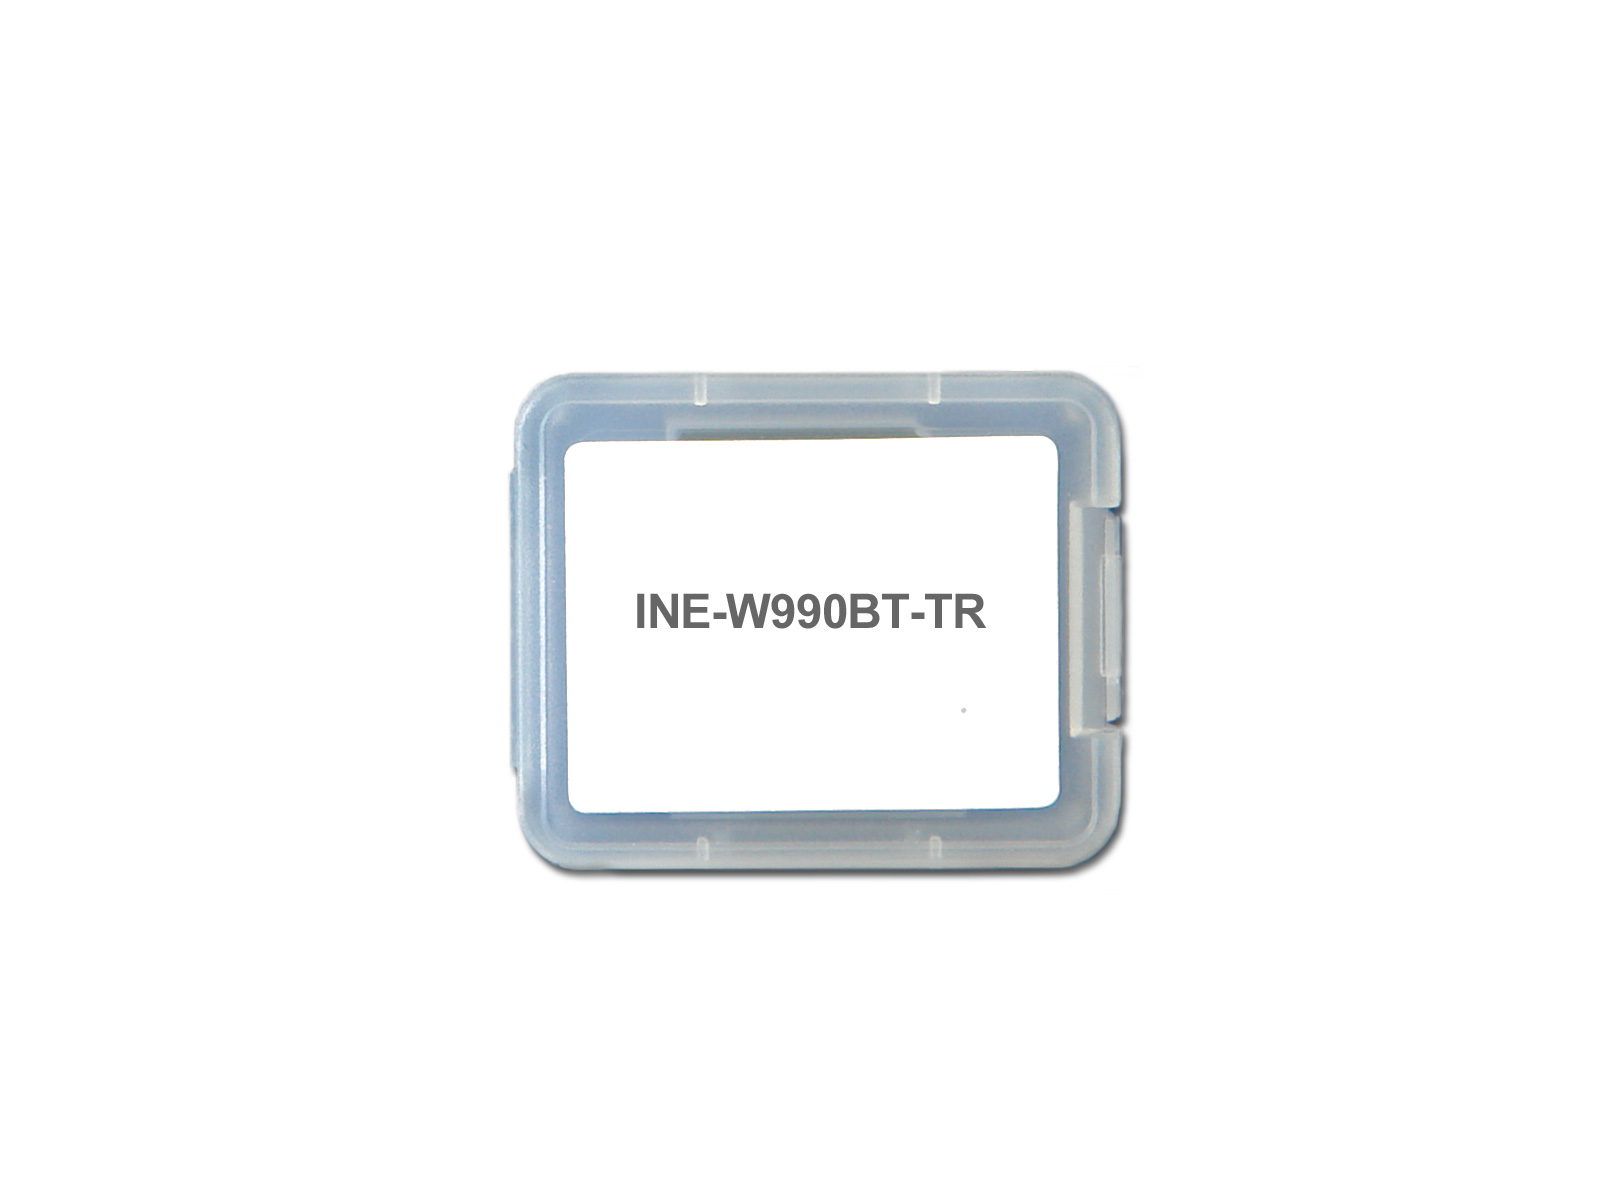 Alpine INE-W990BT-TR Camping, Caravan & LKW Software für INE-W990BT / INE-W990HDMI